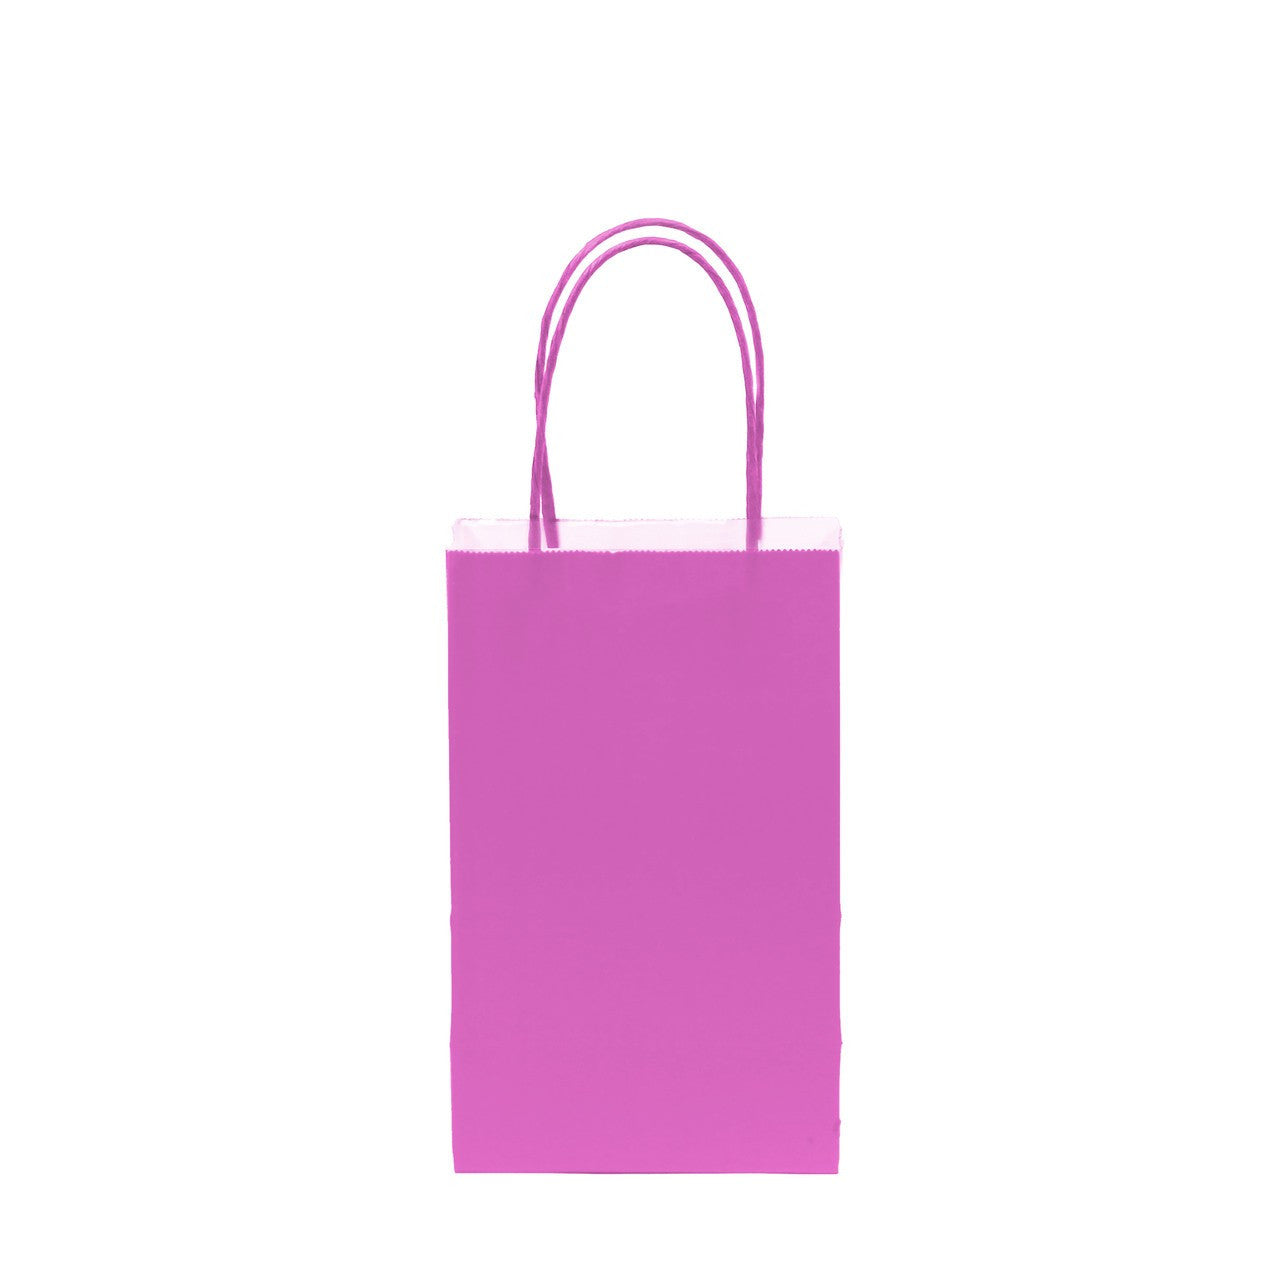 12 pcs- Solid Hot Pink Color Kraft Bag 5" x 8.25"